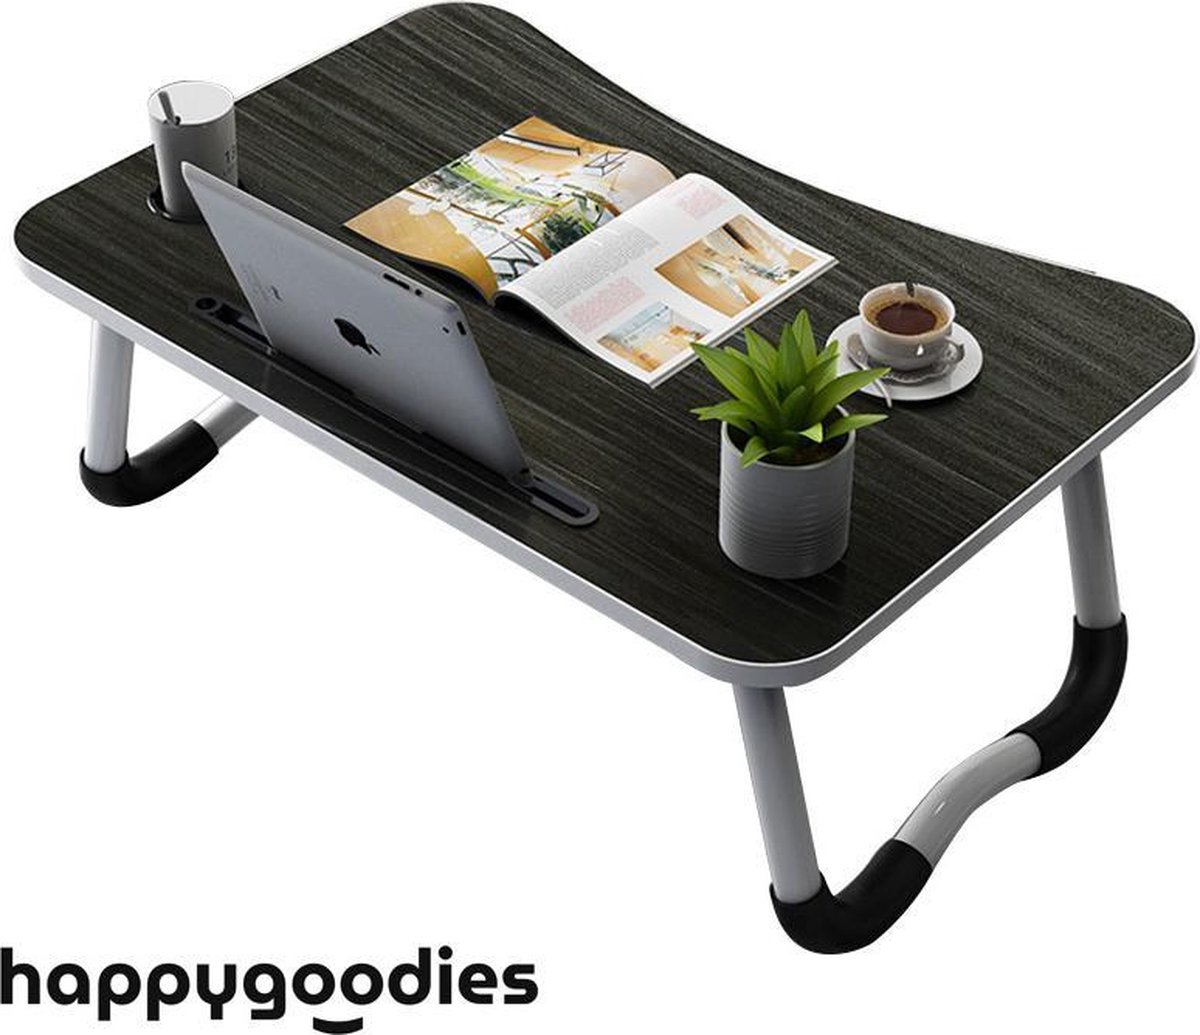 Happygoodies opvouwbare Laptop Tafel – Laptop Standaard – Laptop Warmteafvoer - Efficiënt thuiswerken – Ideale zithouding - Zwart - Happygoodies